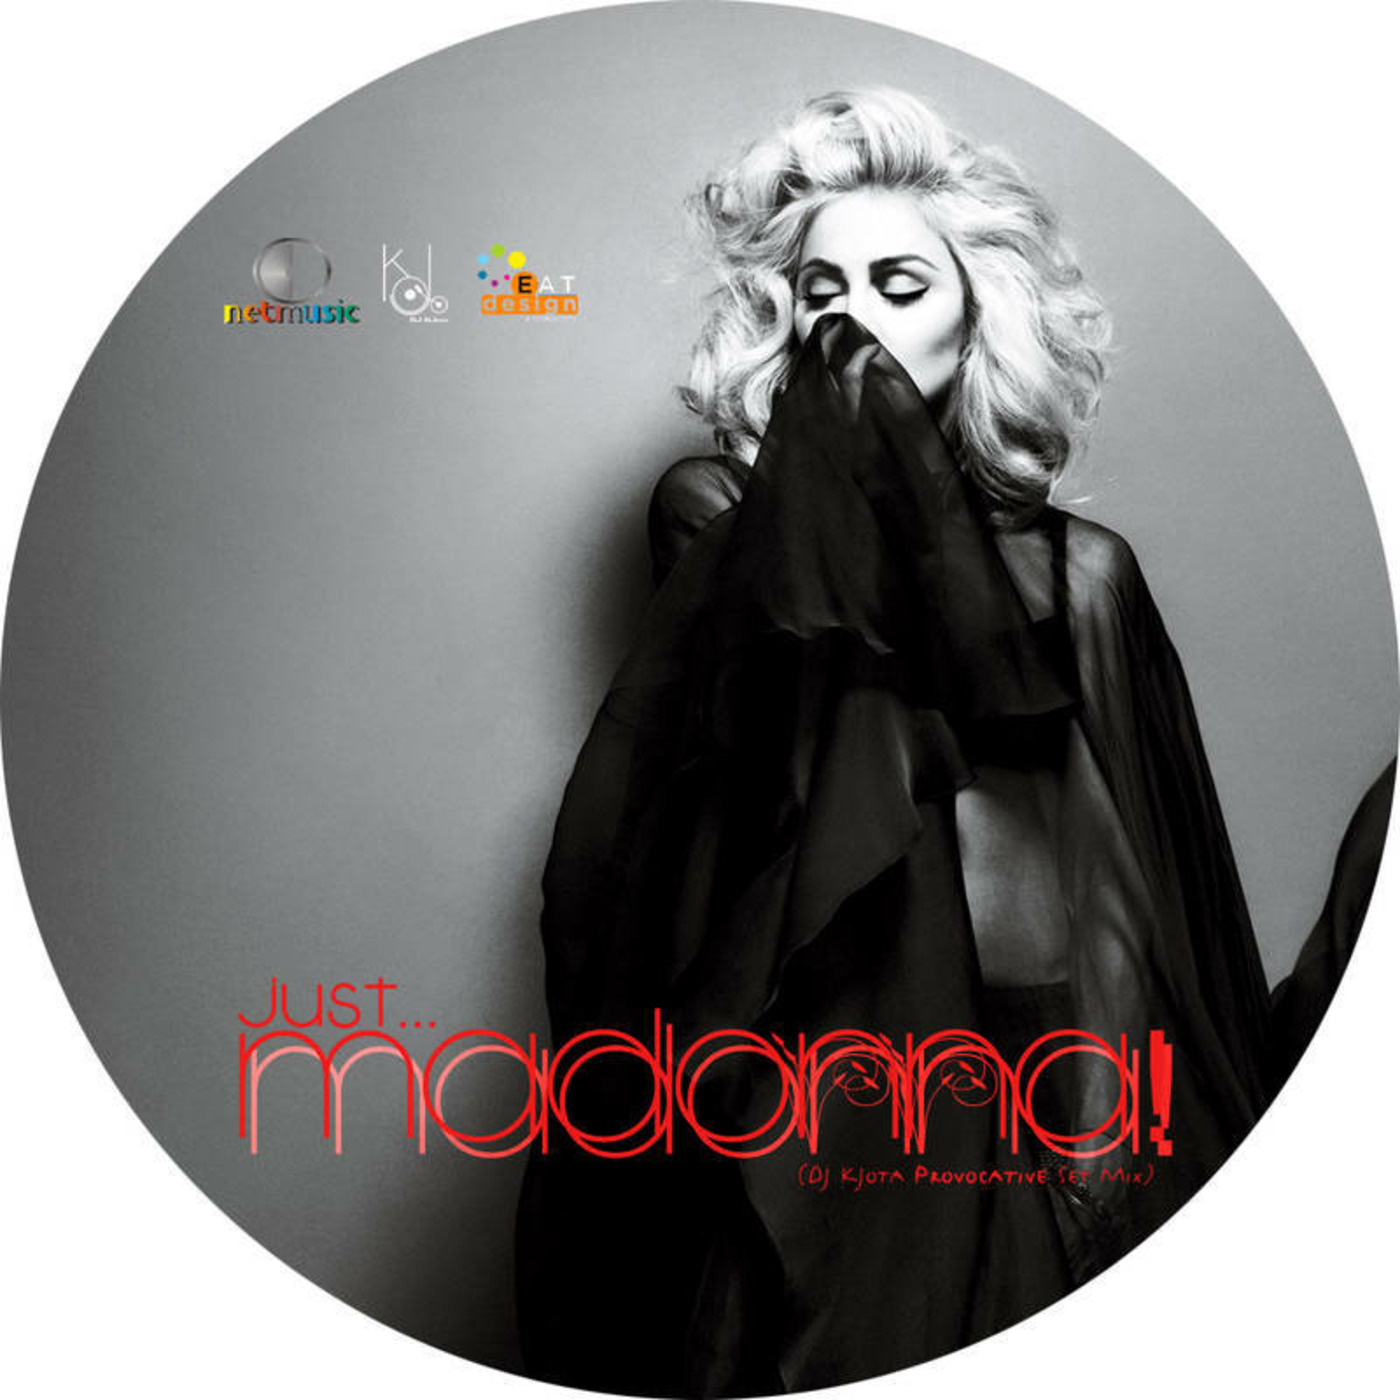 Just... Madonna! (DJ KJota Provocative Set Mix)